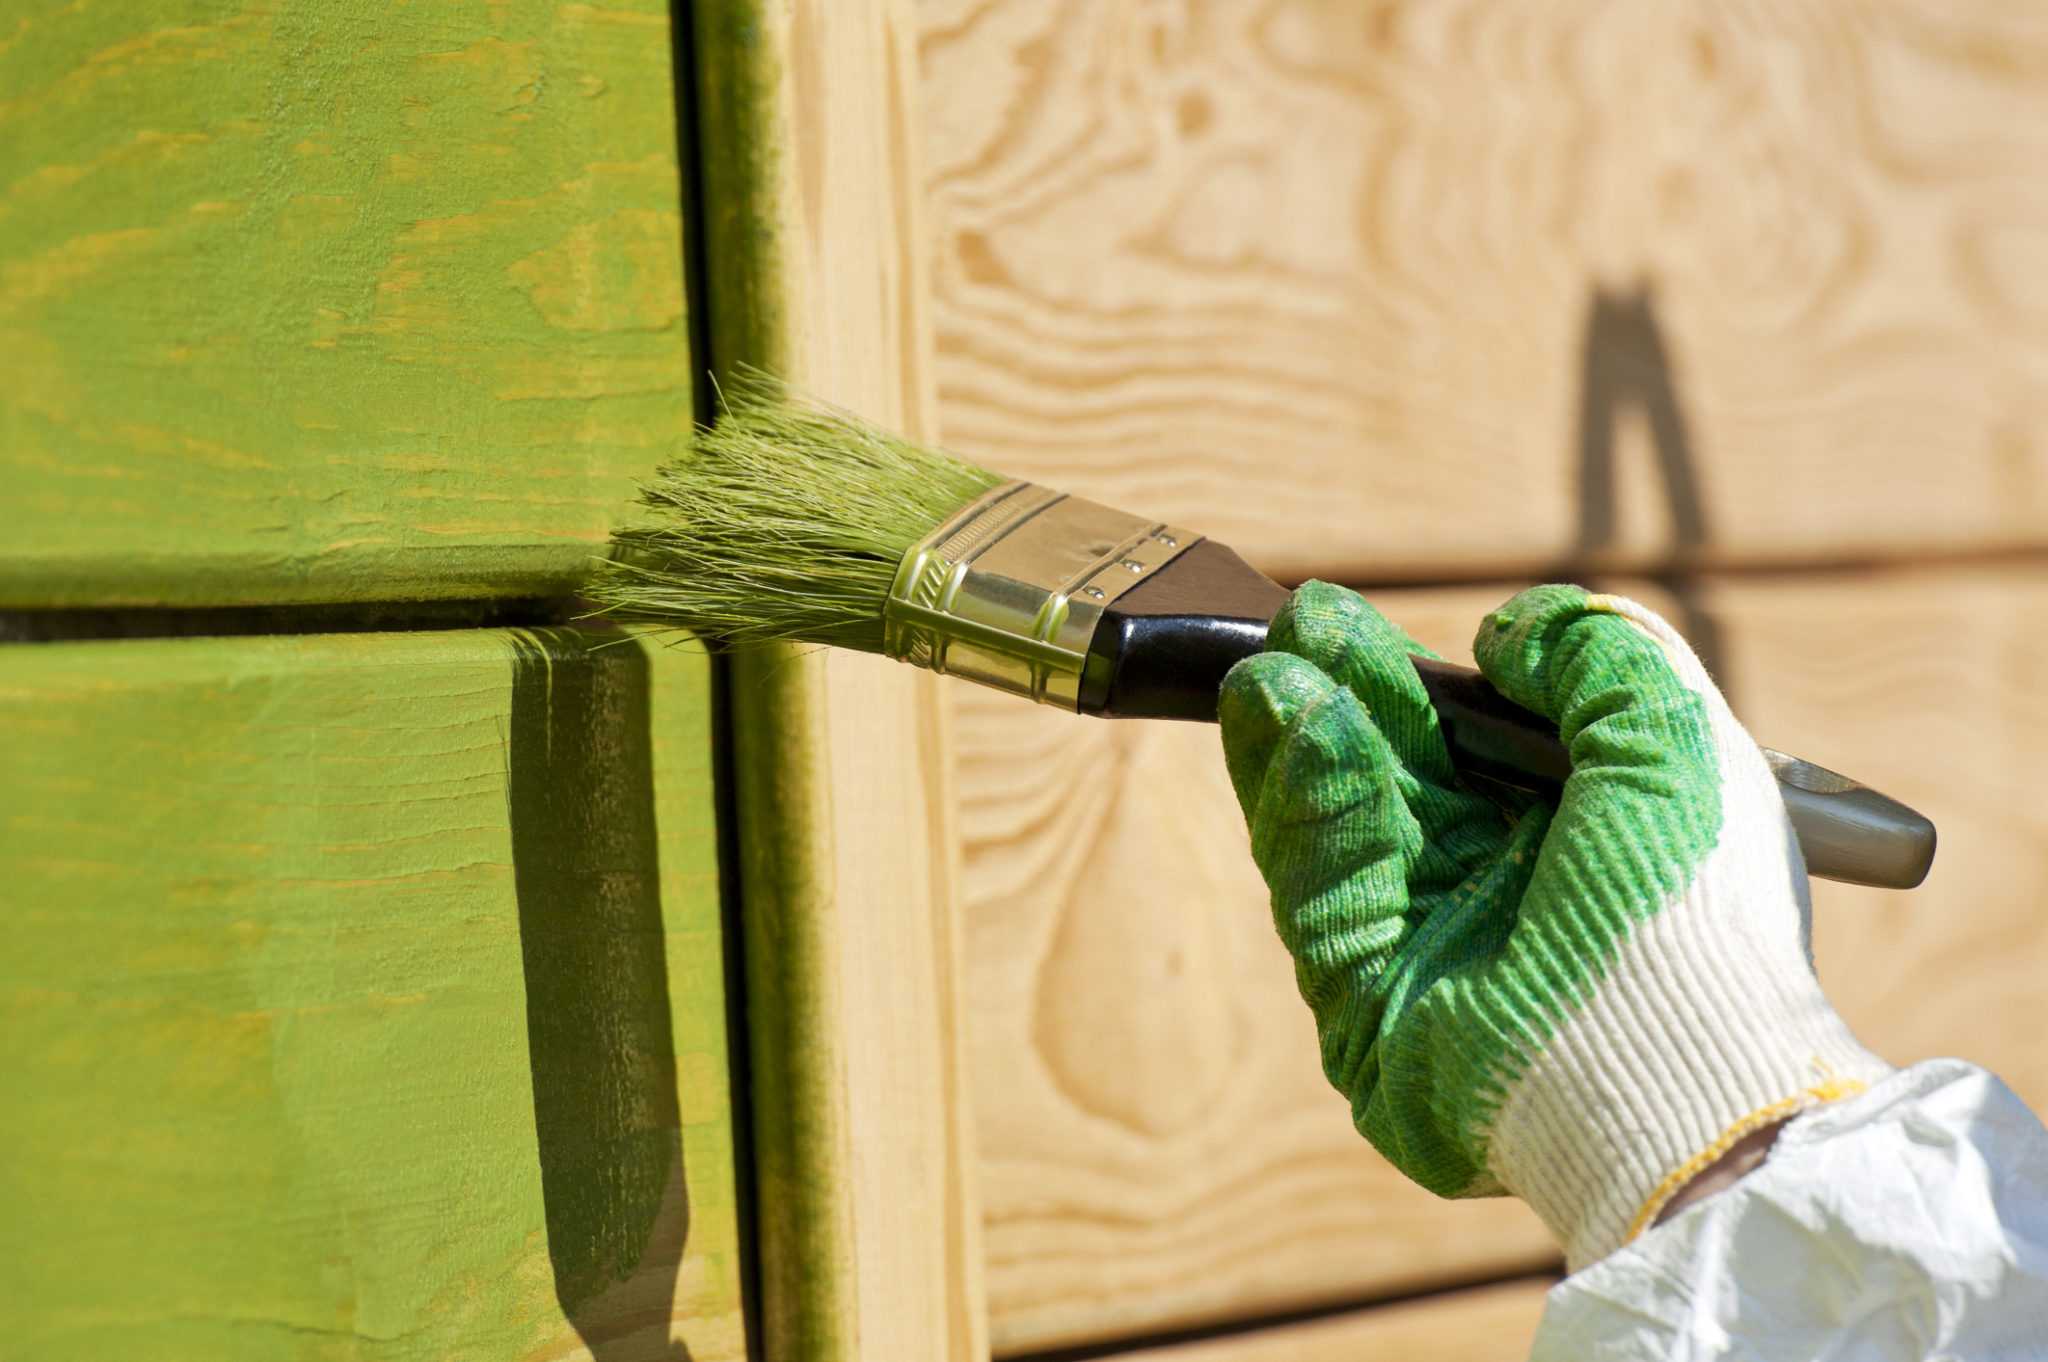 Как покрасить фасад дома — этапы работ